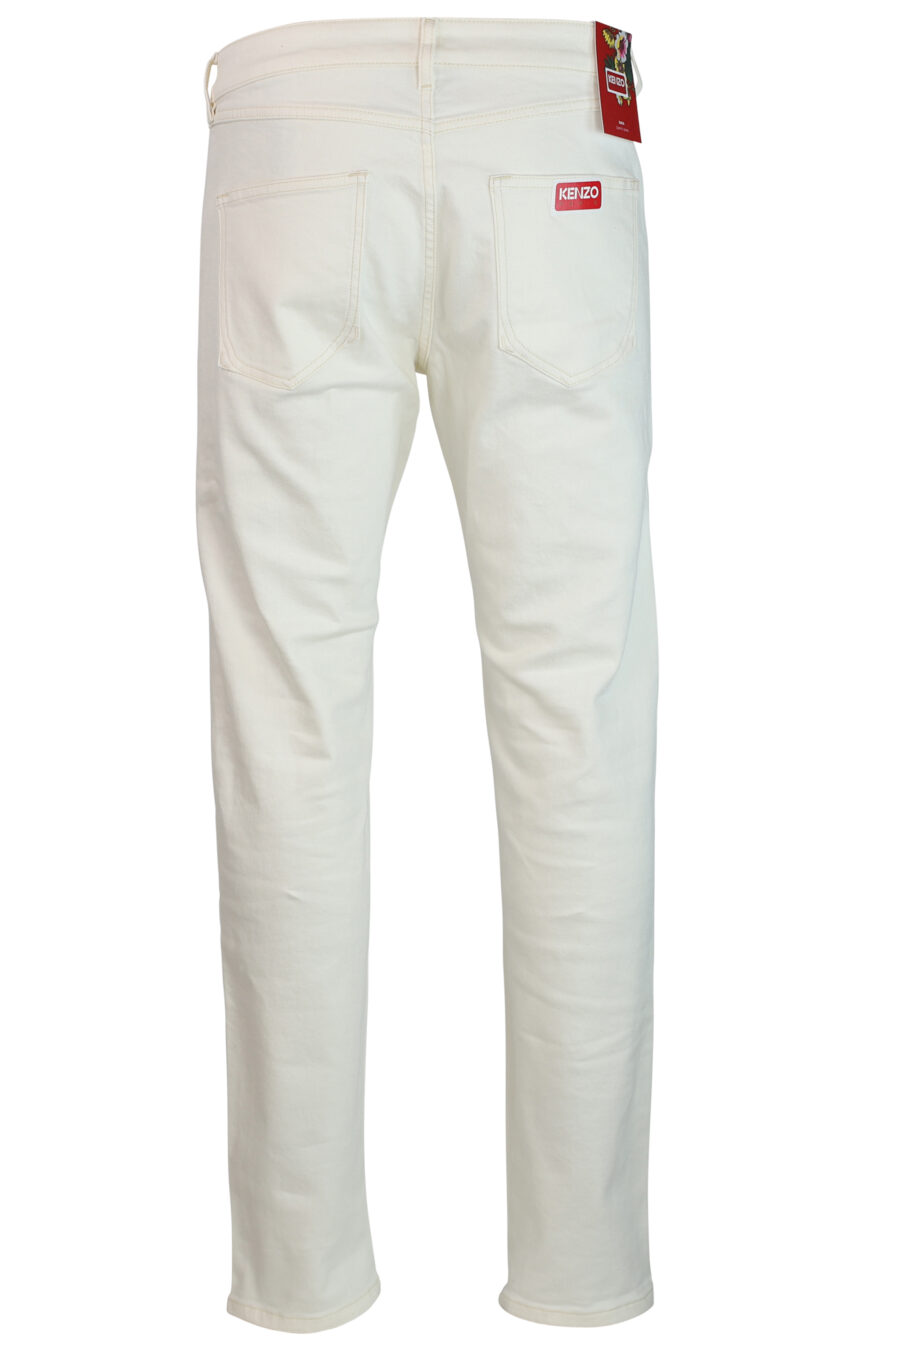 Pantalón vaquero blanco con minilogo - IMG 0292